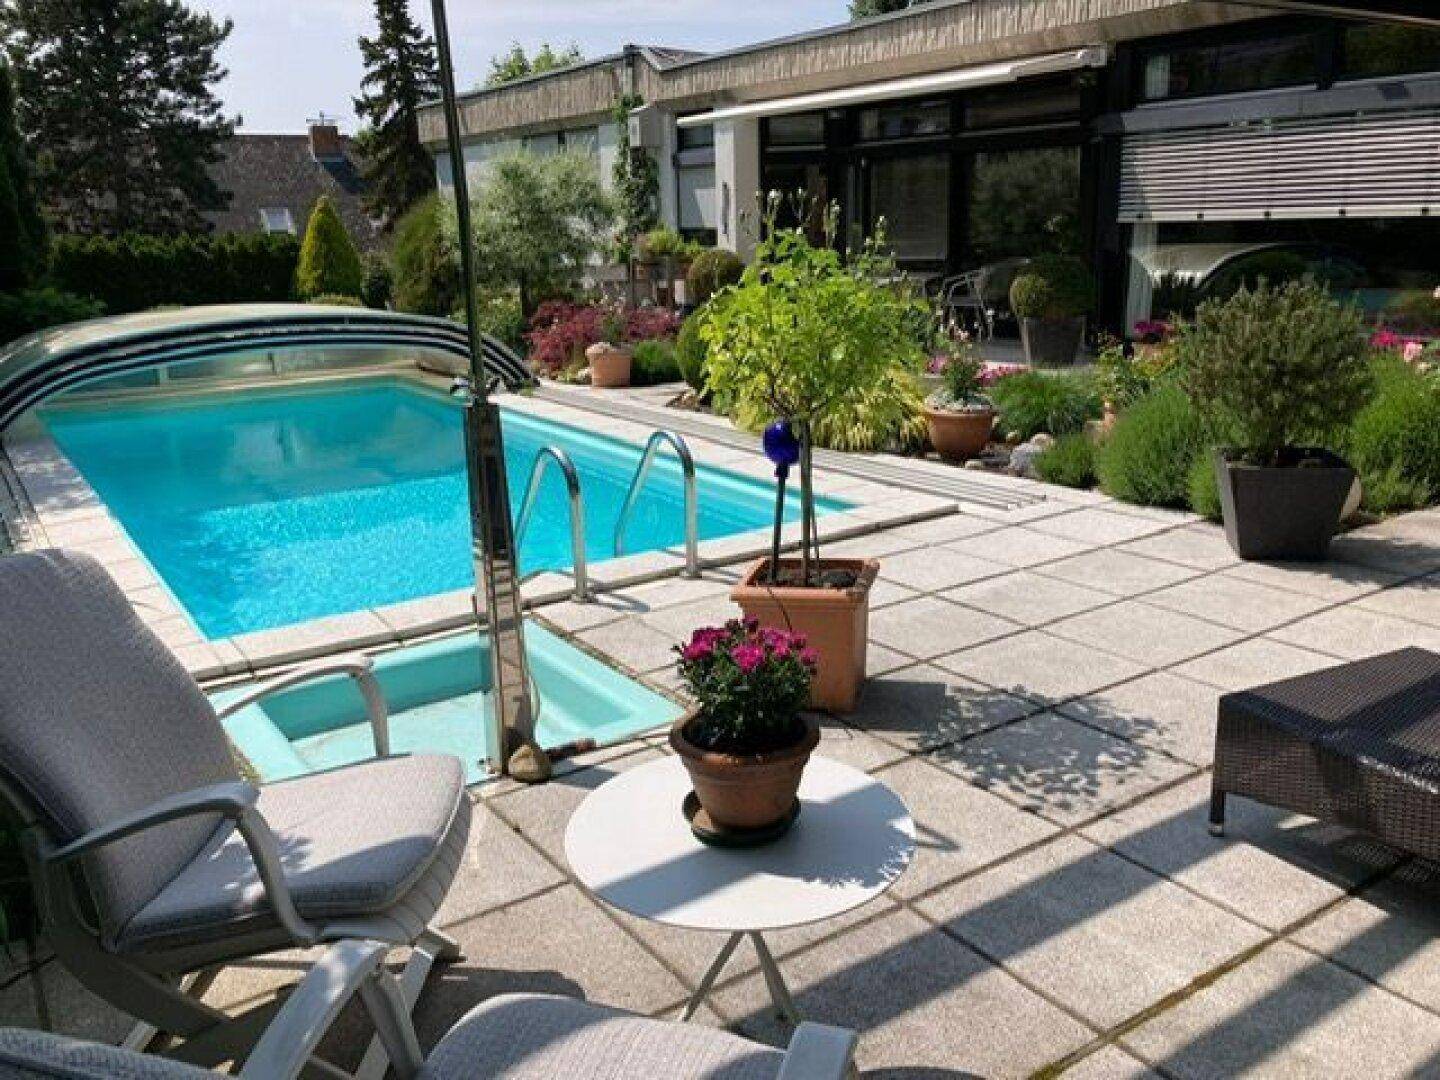 Sommer mit Pool und herrlichem Garten genießen2